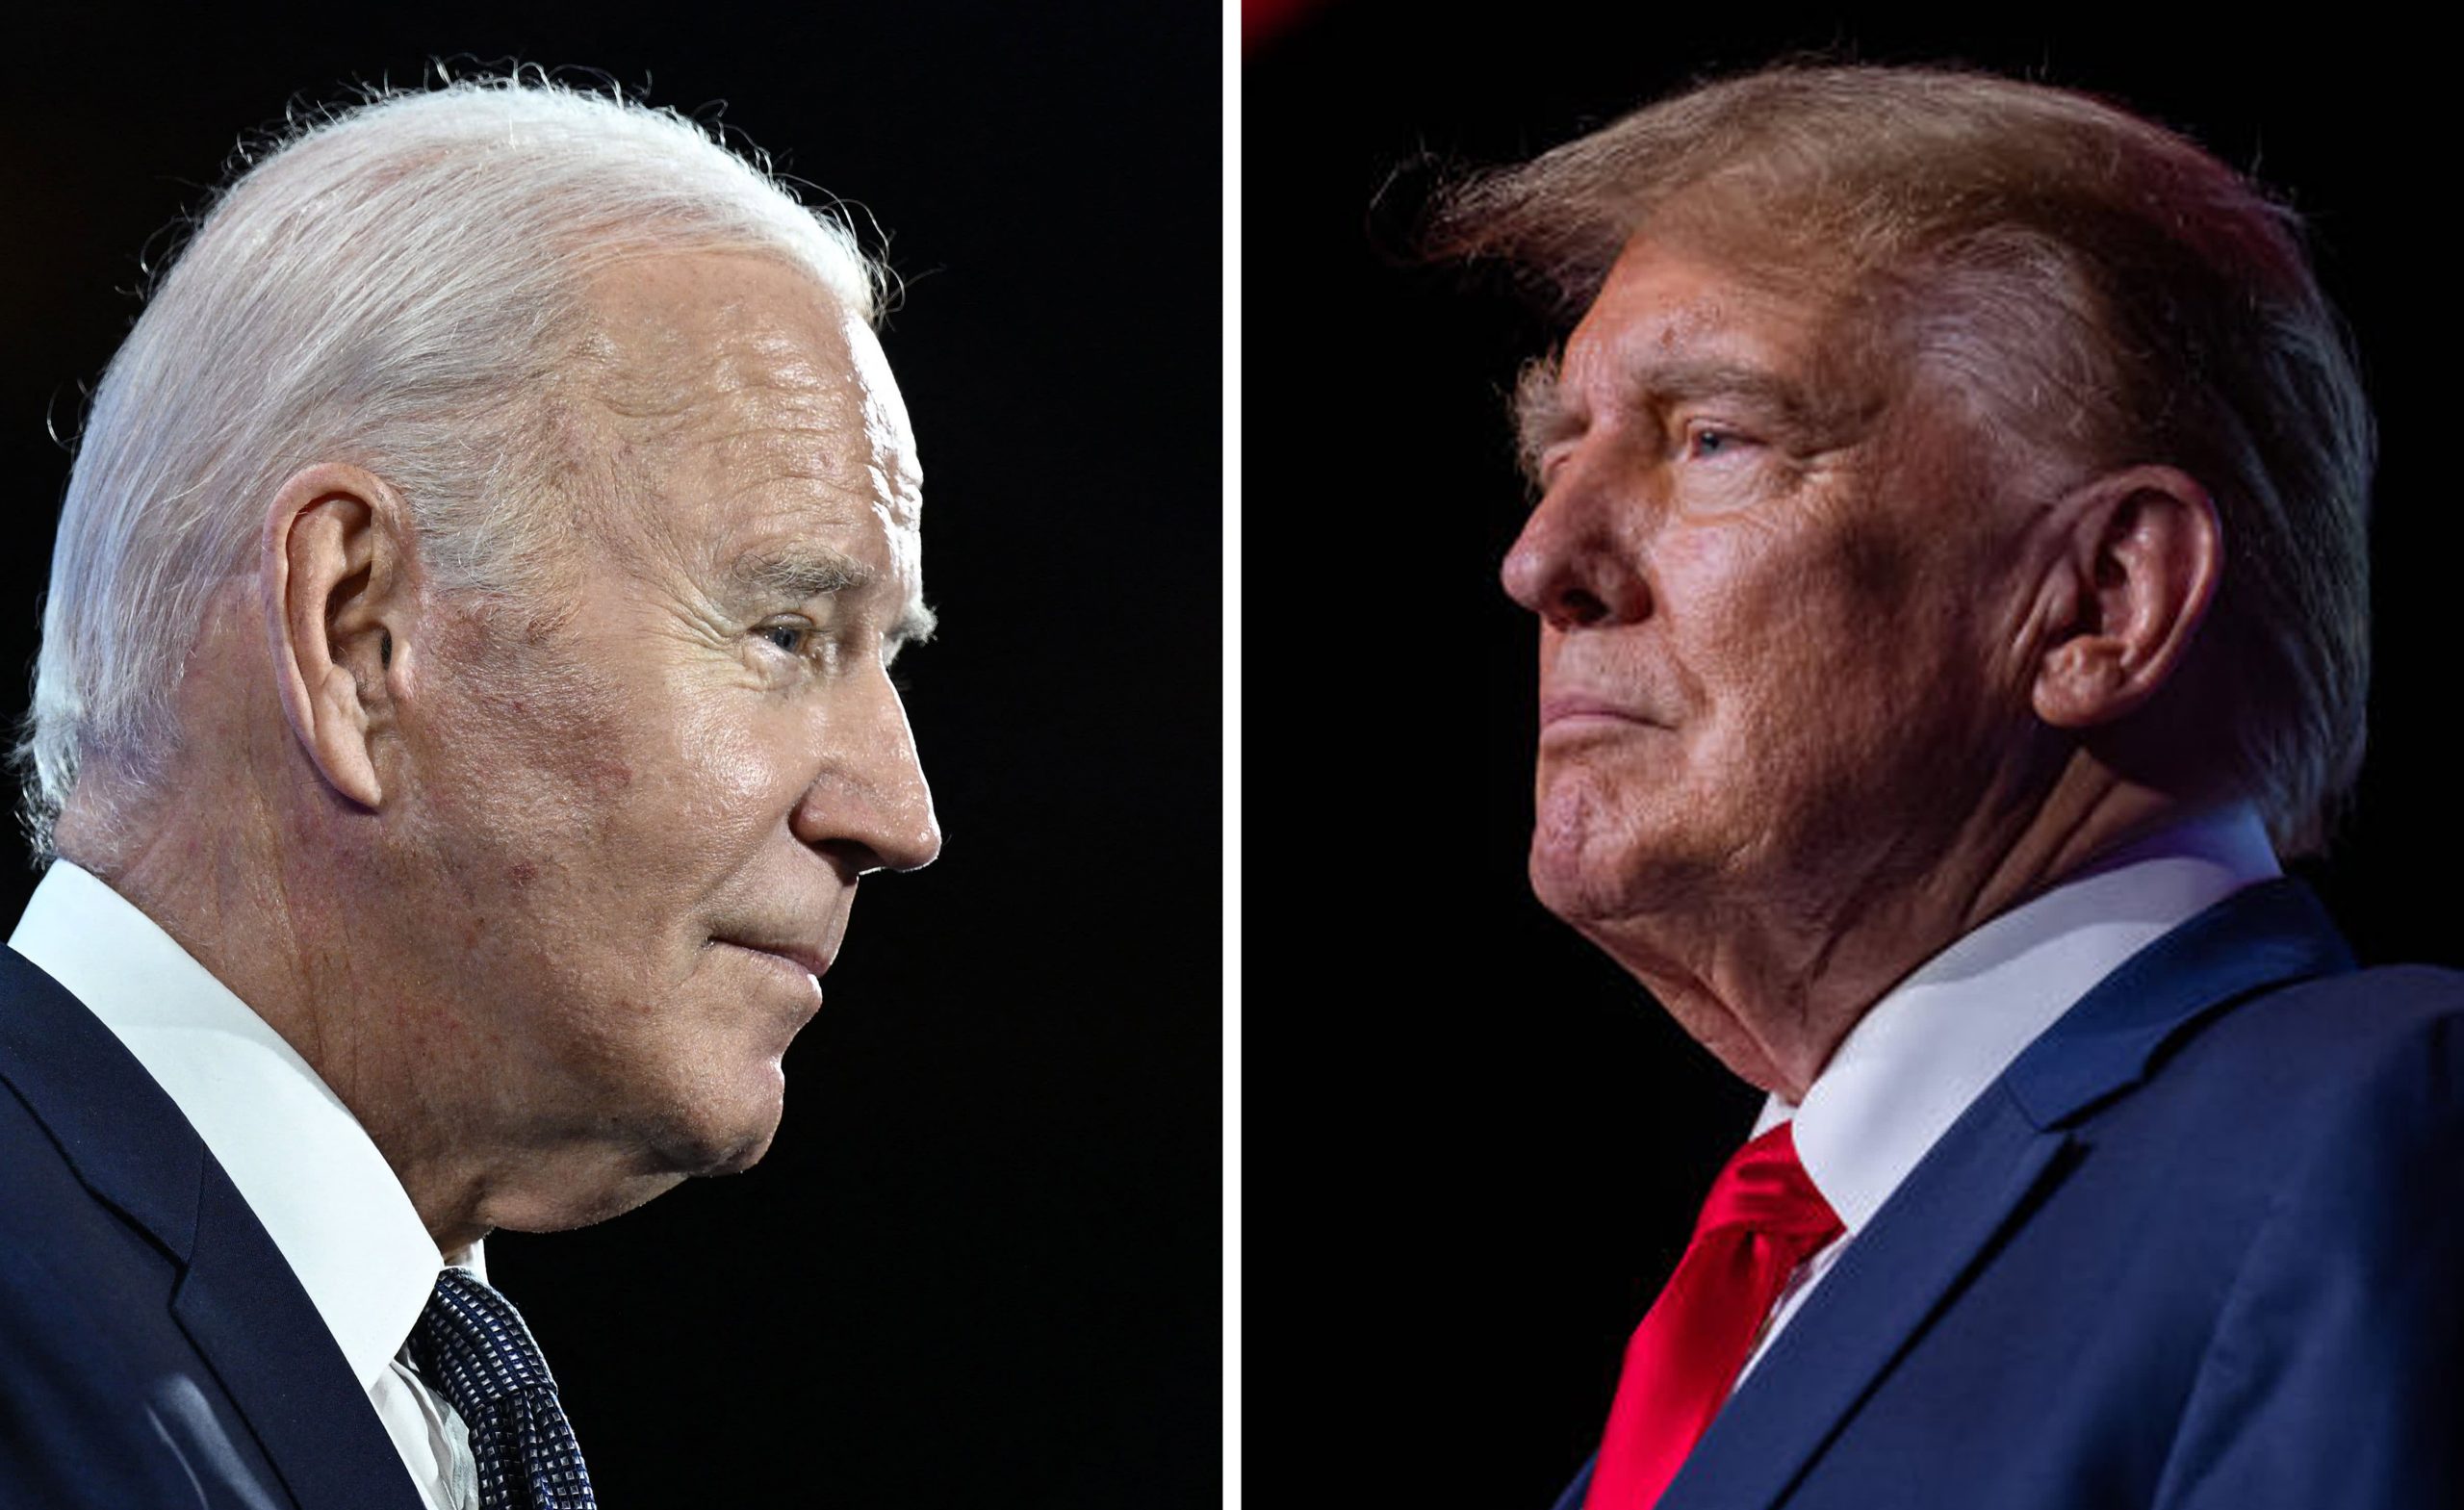 Në prag të zgjedhjeve presidenciale Biden fton Trumpin në debat